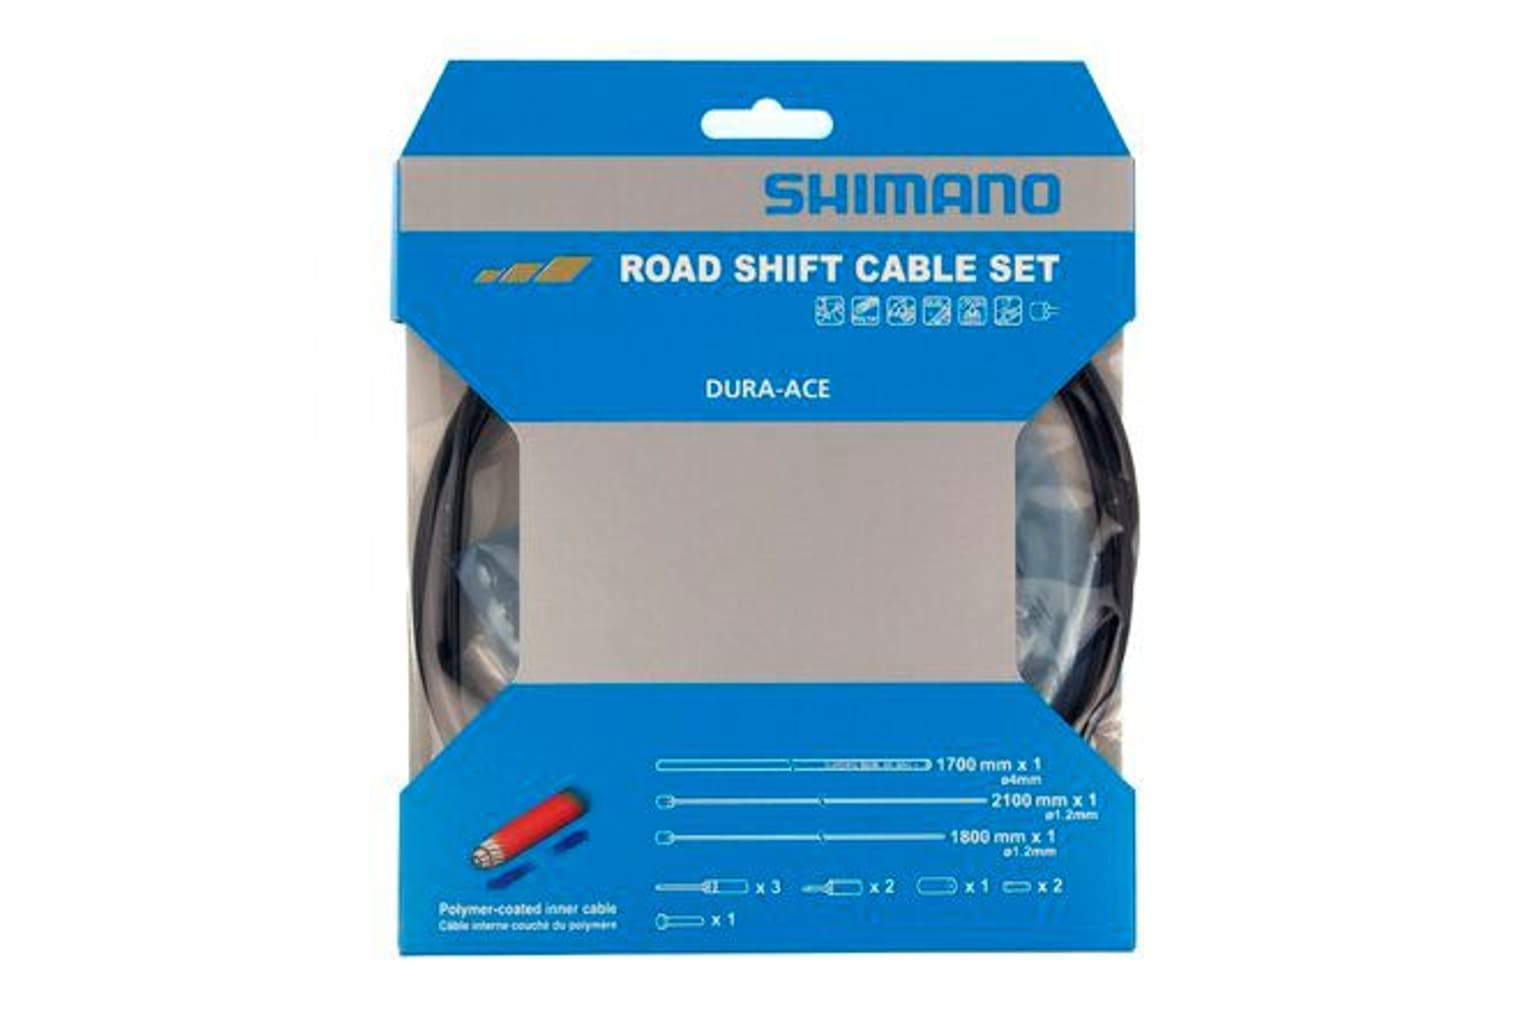 Shimano Shimano Schaltzug-Set Dura-Ace BC-9000 Polymerbeschichtet Schaltkabel 1